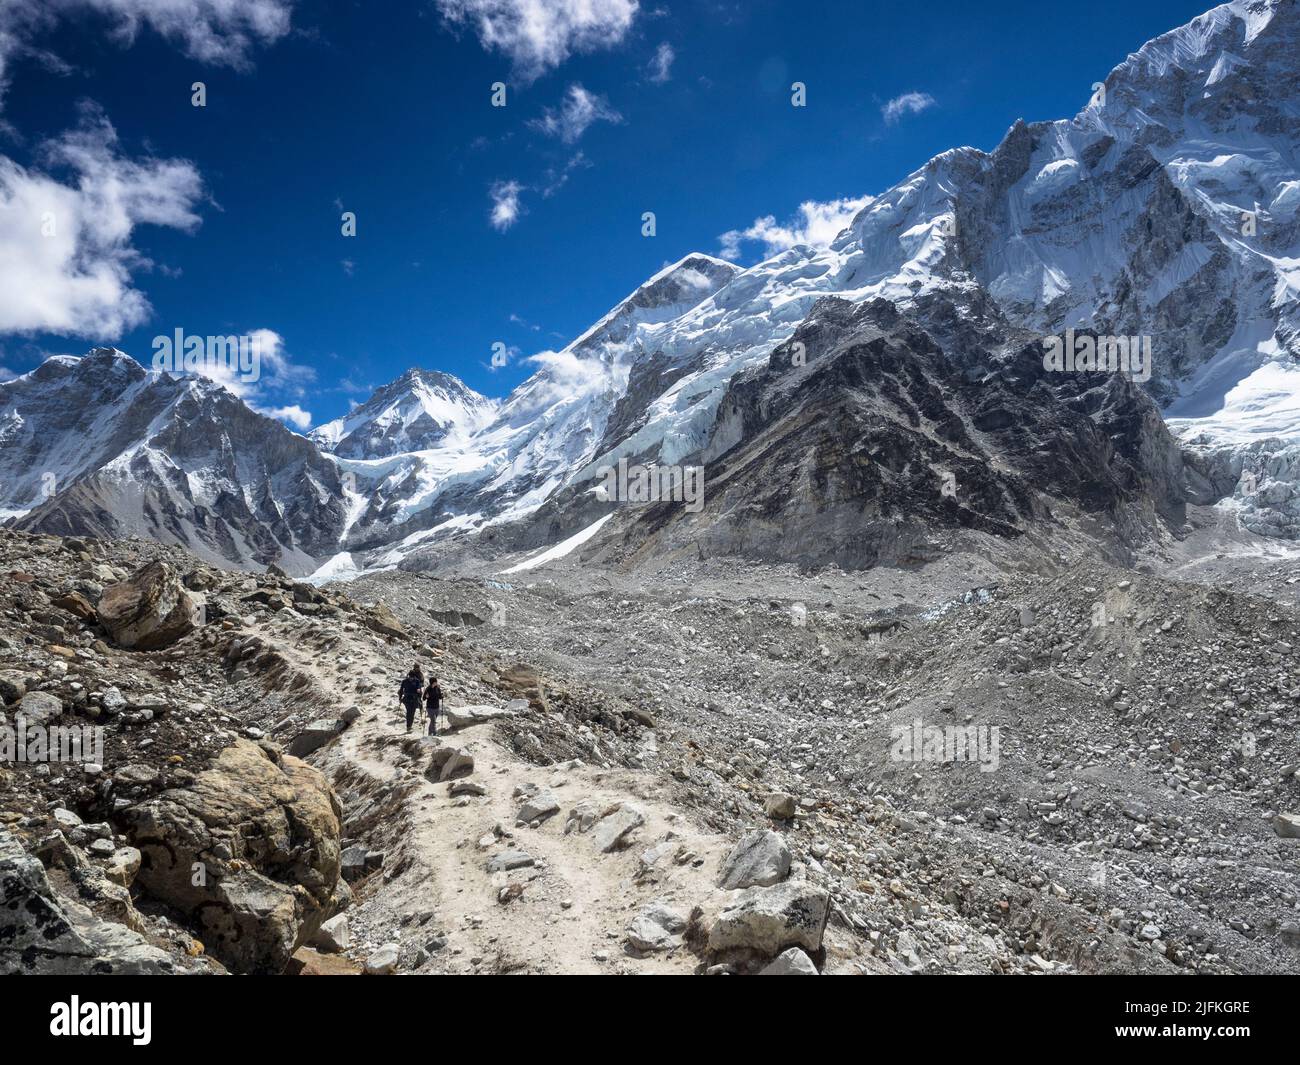 Randonneurs sur la route vers le camp de base de l'Everest le long de la moraine du glacier de Khumbu. Khumbutse (6636m) (l), Changtse (7543m) et l'épaule ouest sont visibles Banque D'Images